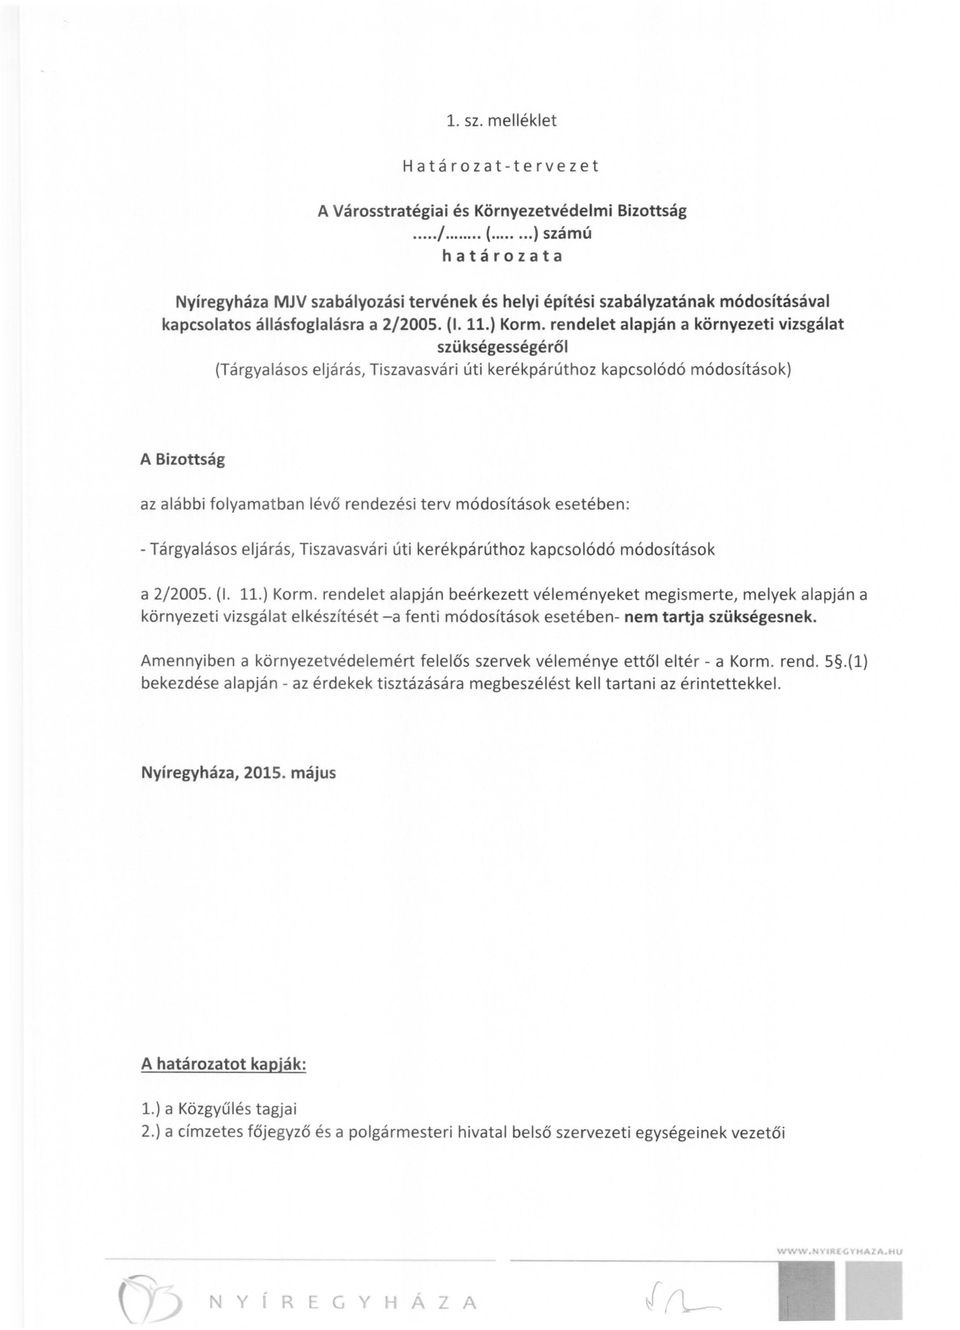 rendelet alapján a környezeti vizsgálat szükségességéről (Tárgyalásos eljárás, Tiszavasvári úti kerékpárúthoz kapcsolódó módosítások) A Bizottság az alábbi folyamatban lévő rendezési terv módosítások